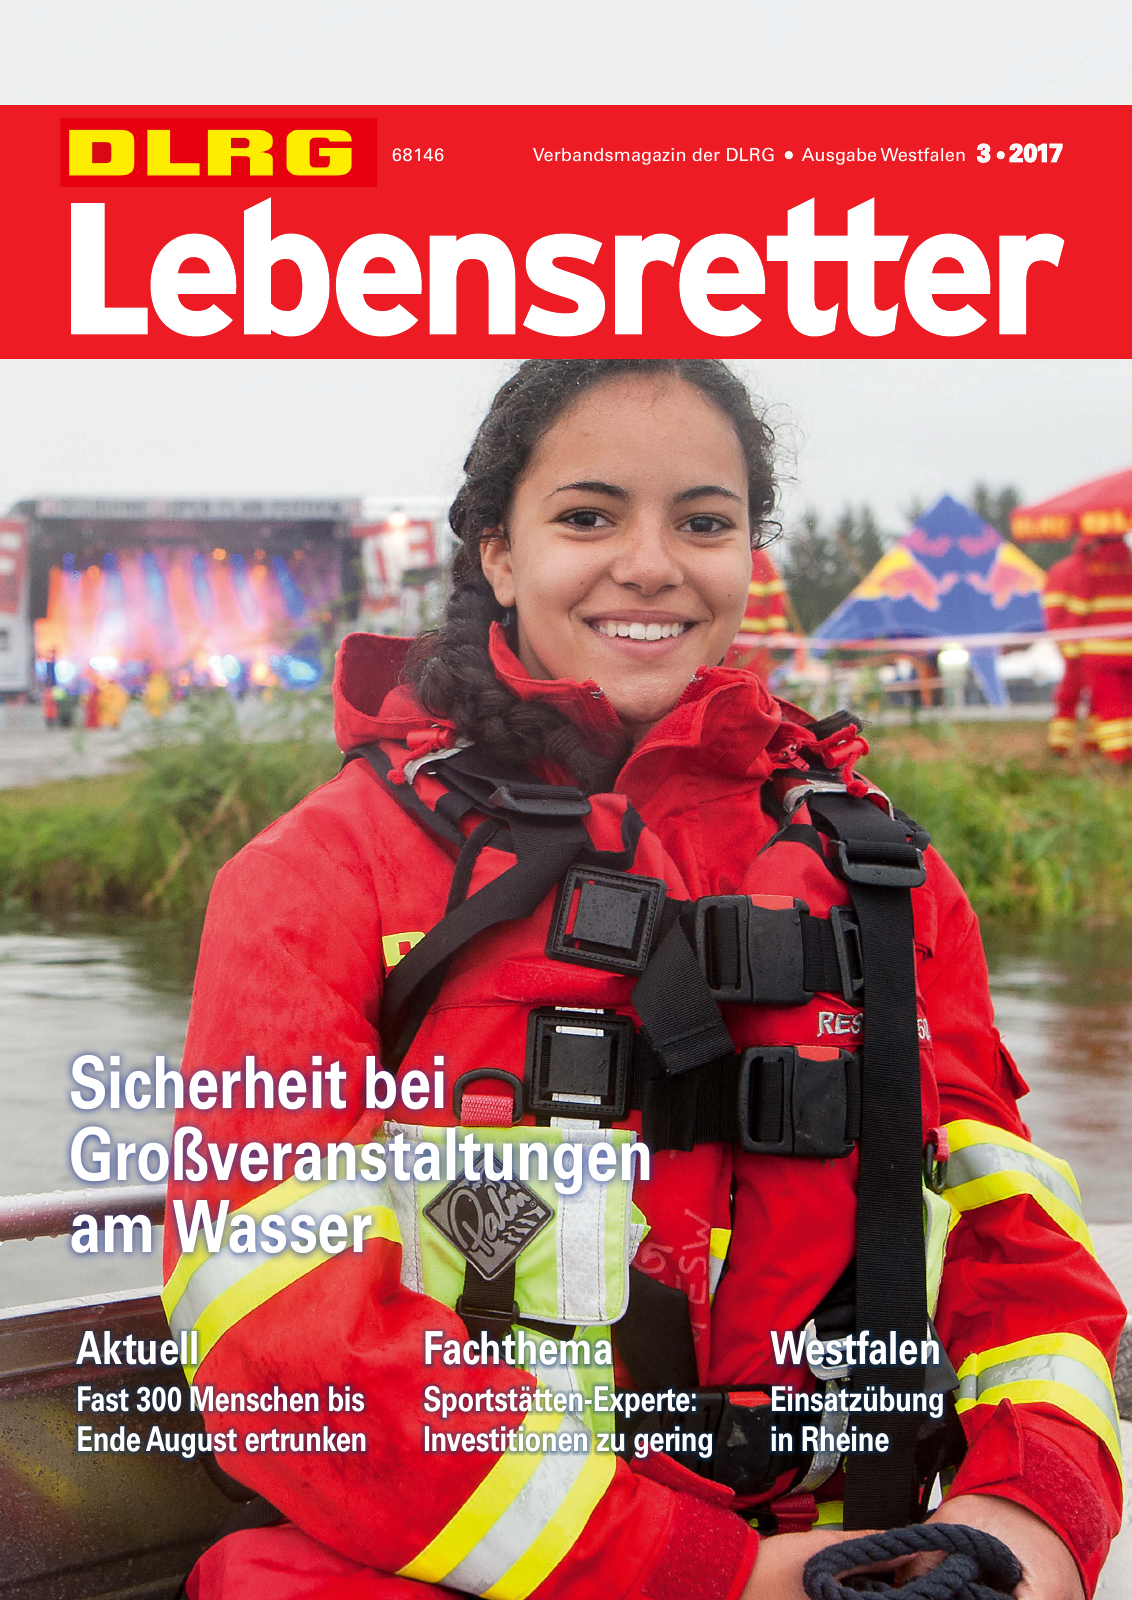 Vorschau Lebensretter 3/2017 - Regionalausgabe Westfalen Seite 1